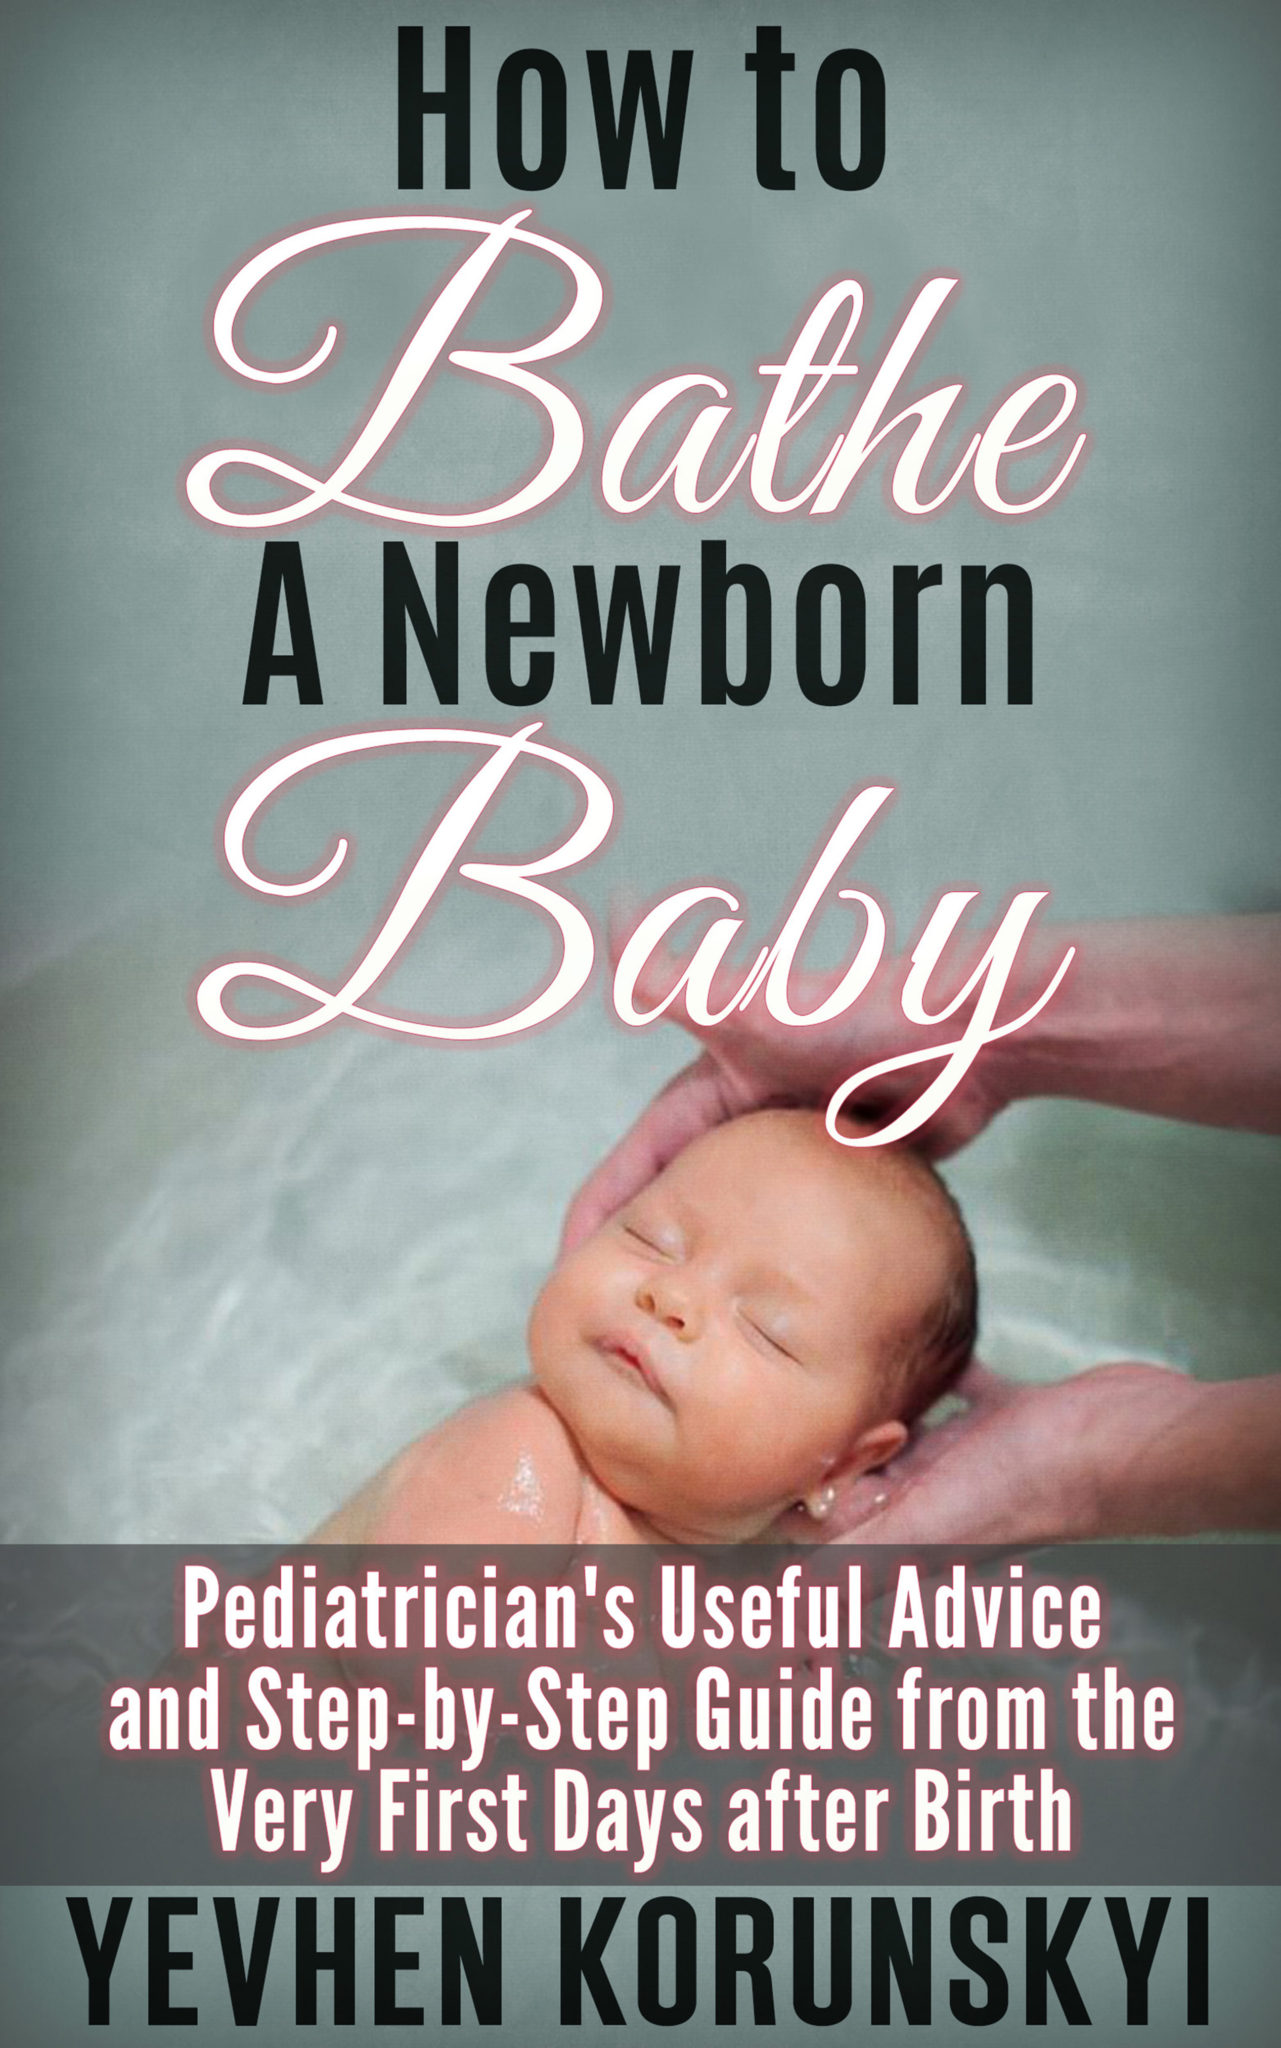 FREE: How to Bathe a Newborn Baby by Yevhen Korunskyi